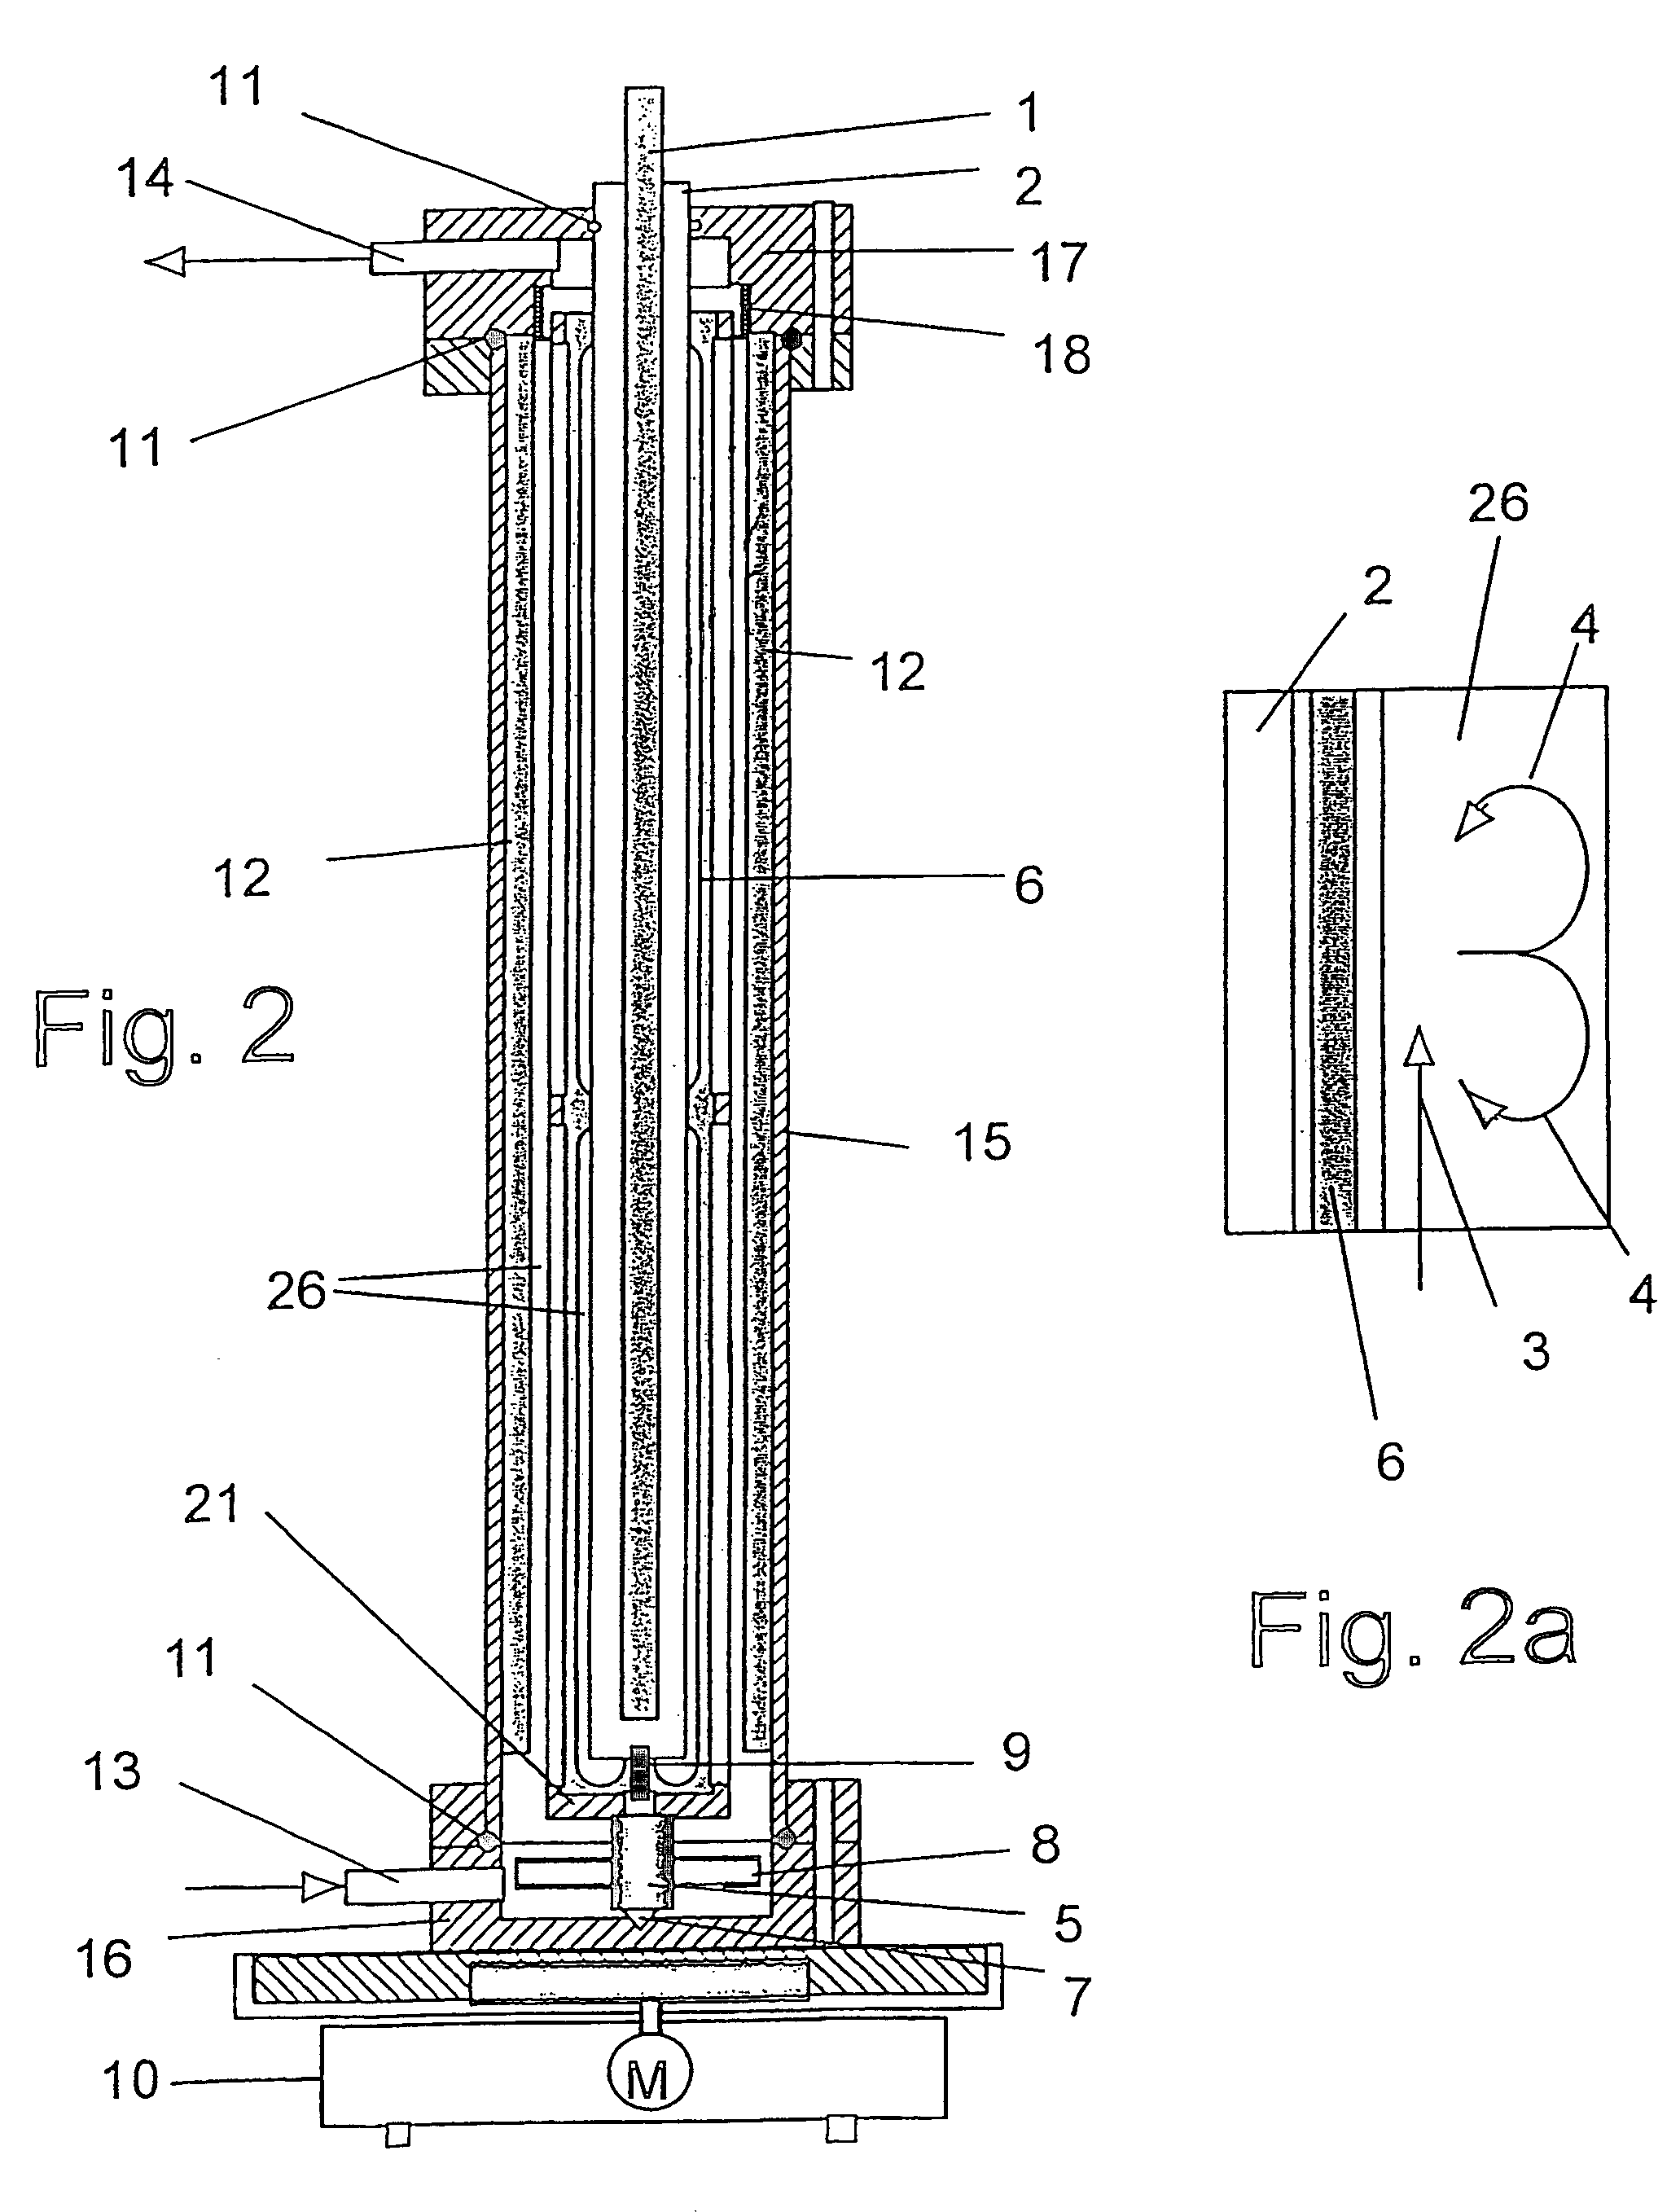 Apparatus for irradiating liquids